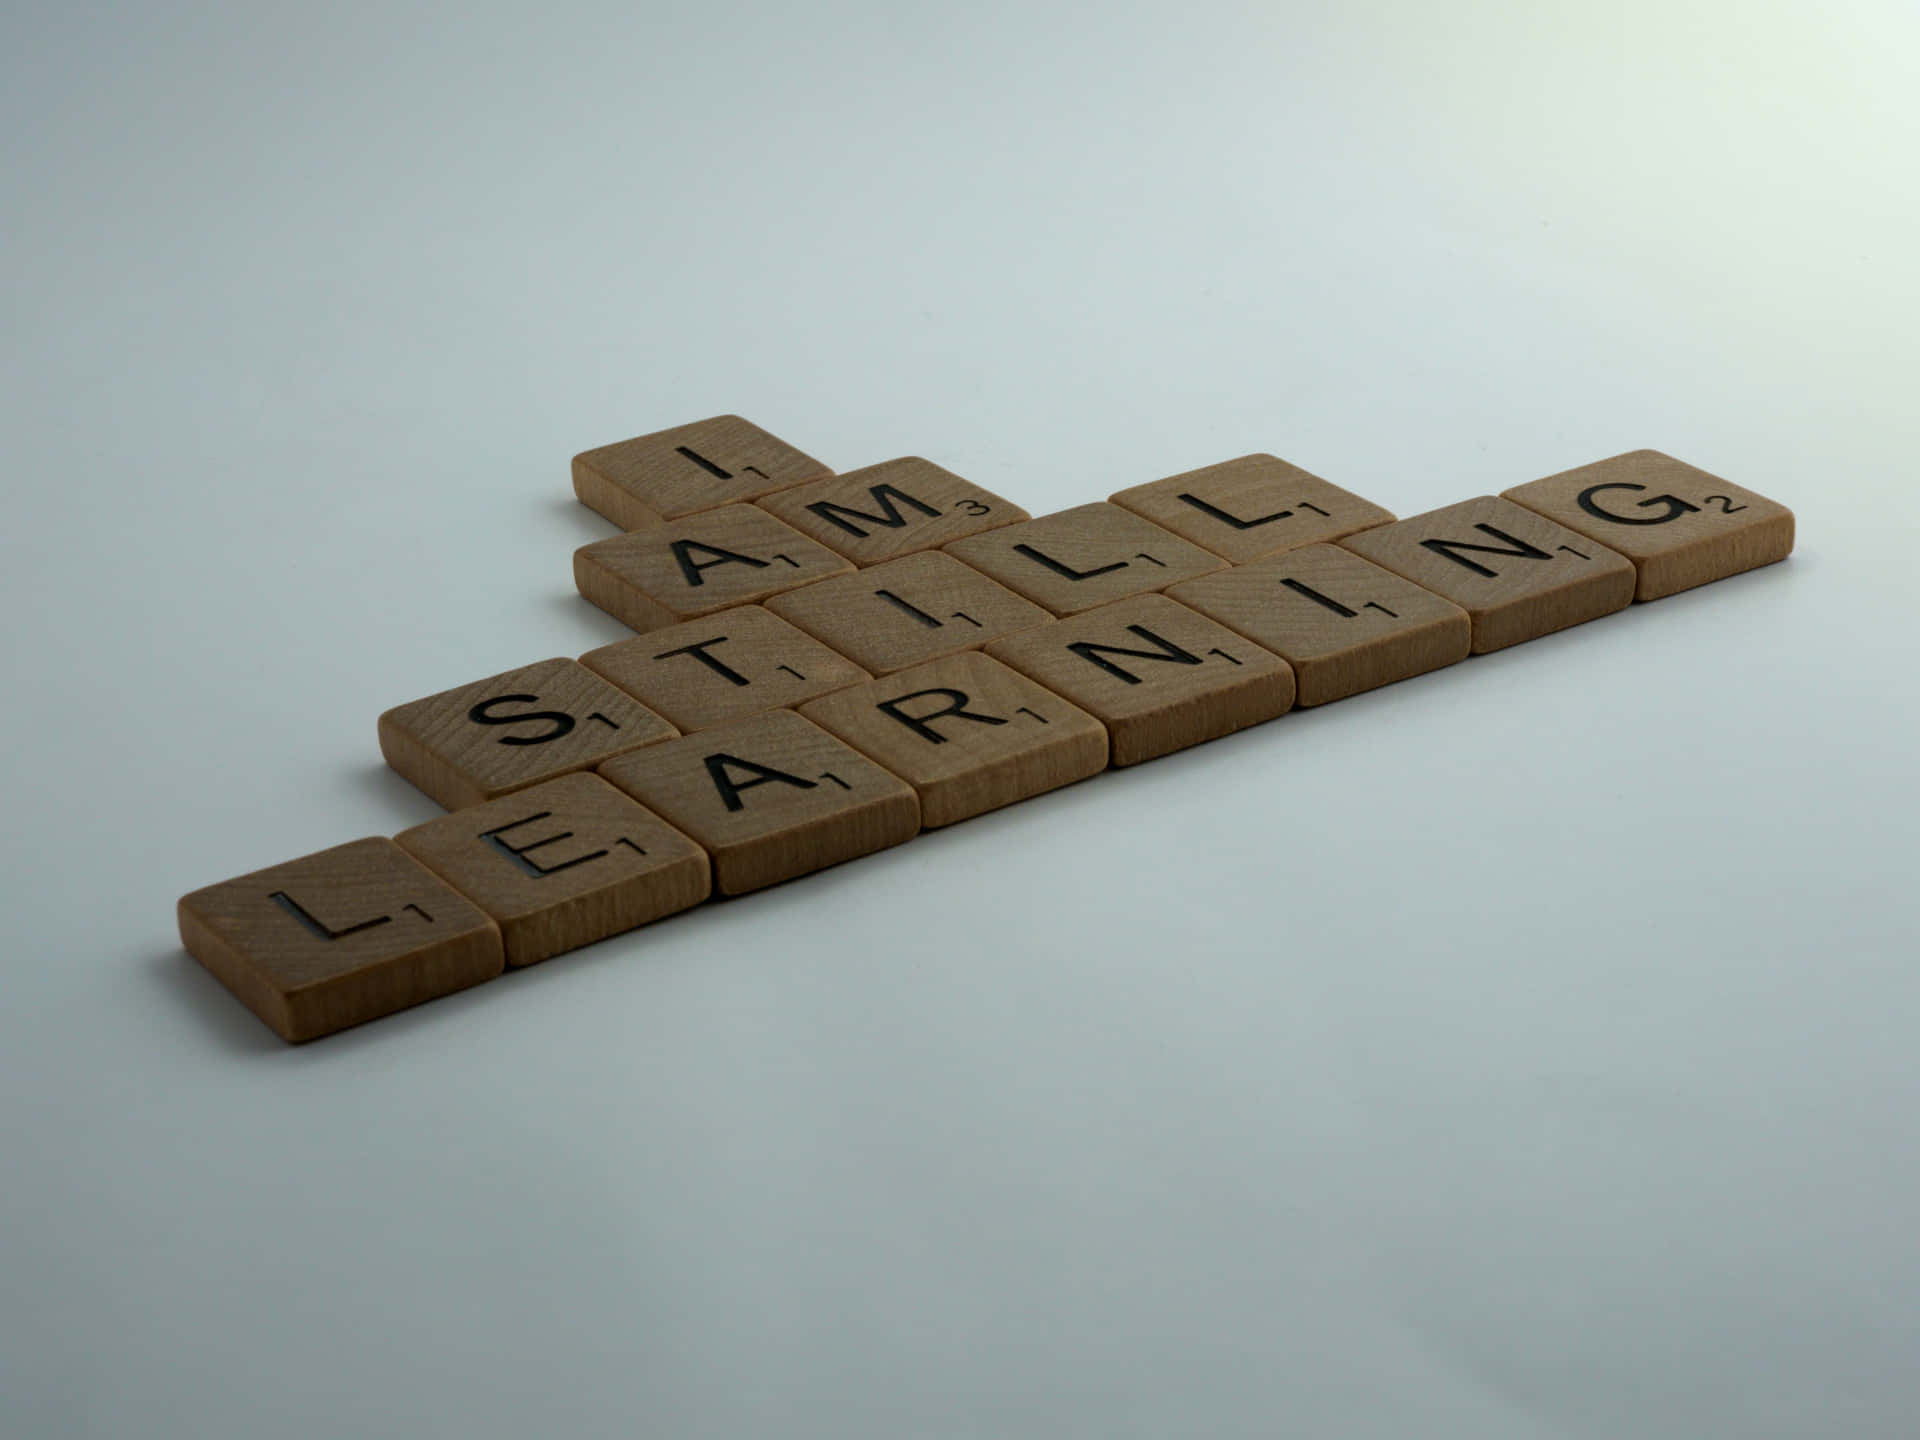 Jaghåller Fortfarande På Att Lära Mig - Scrabble Brickor